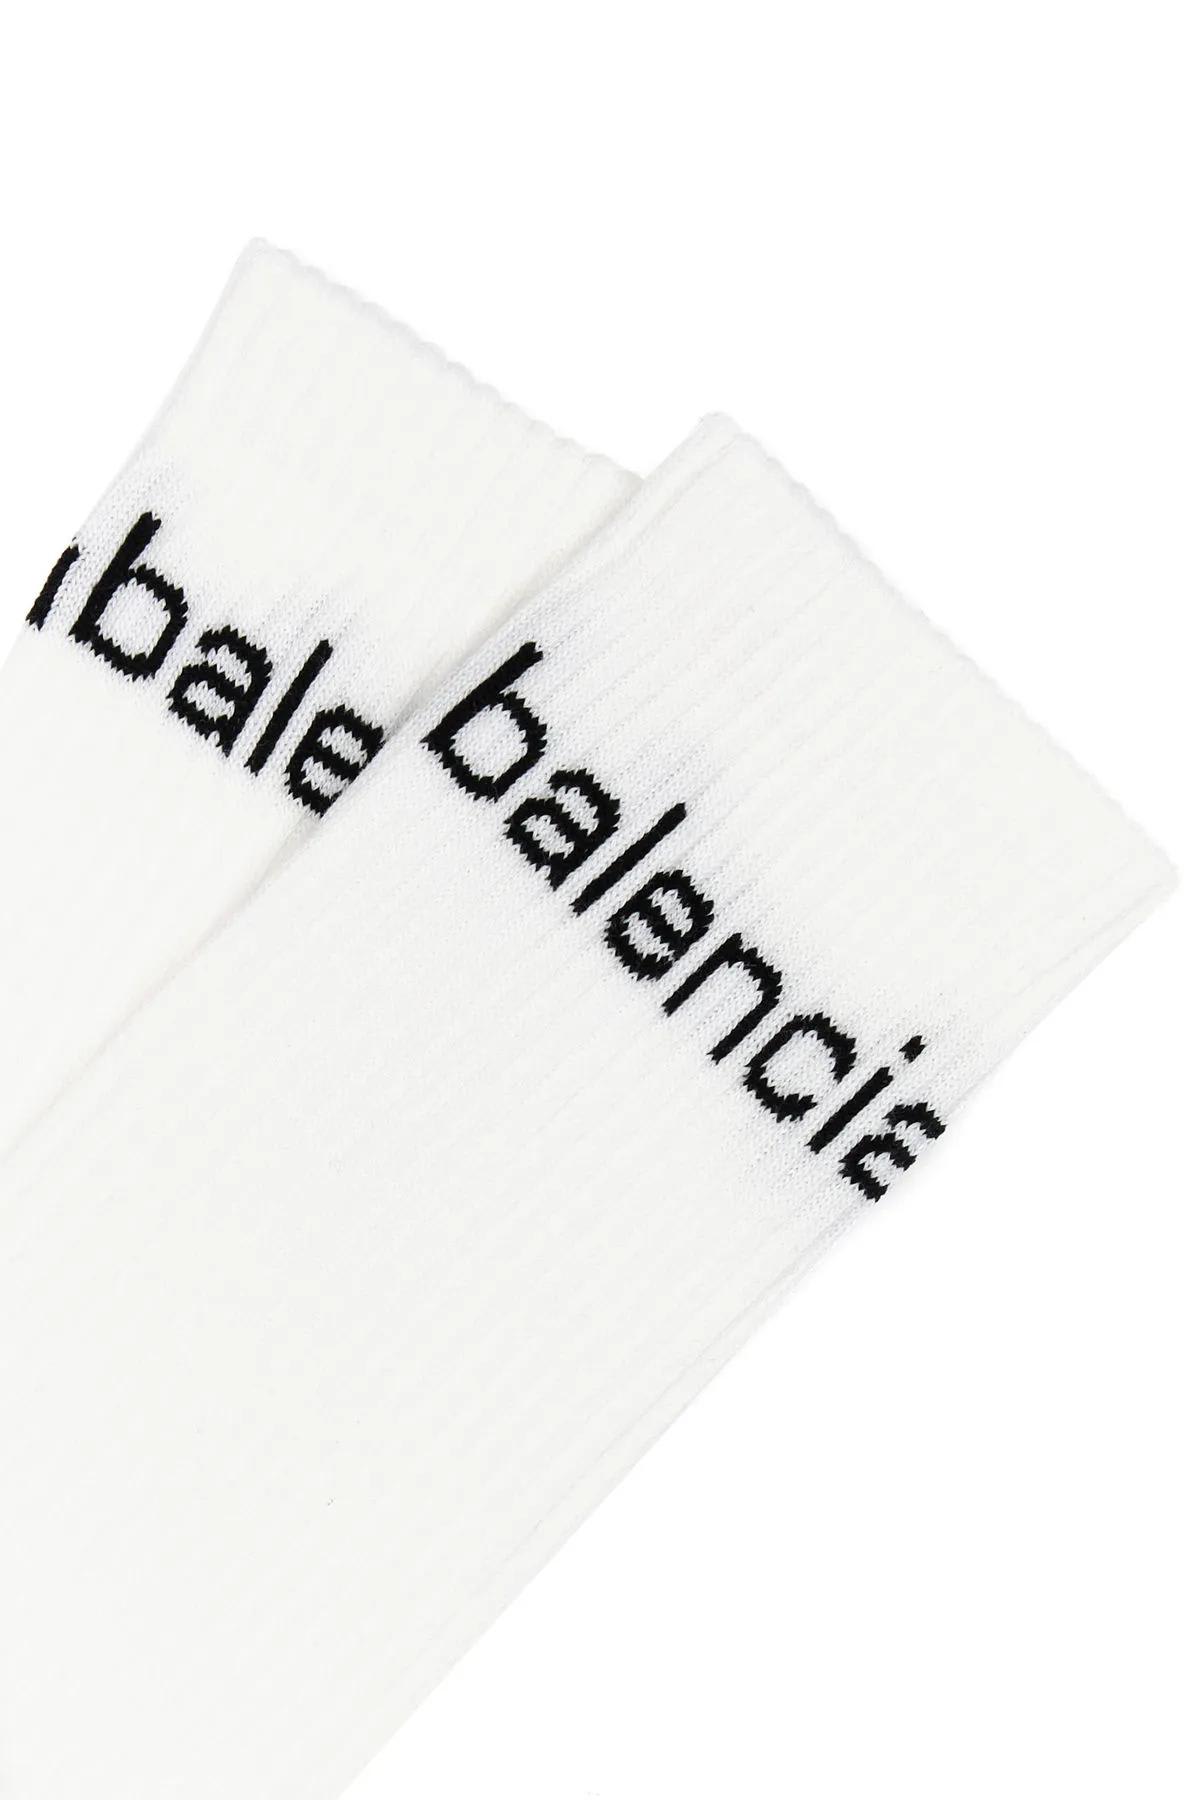 Shop Balenciaga White Stretch Cotton Blend Socks